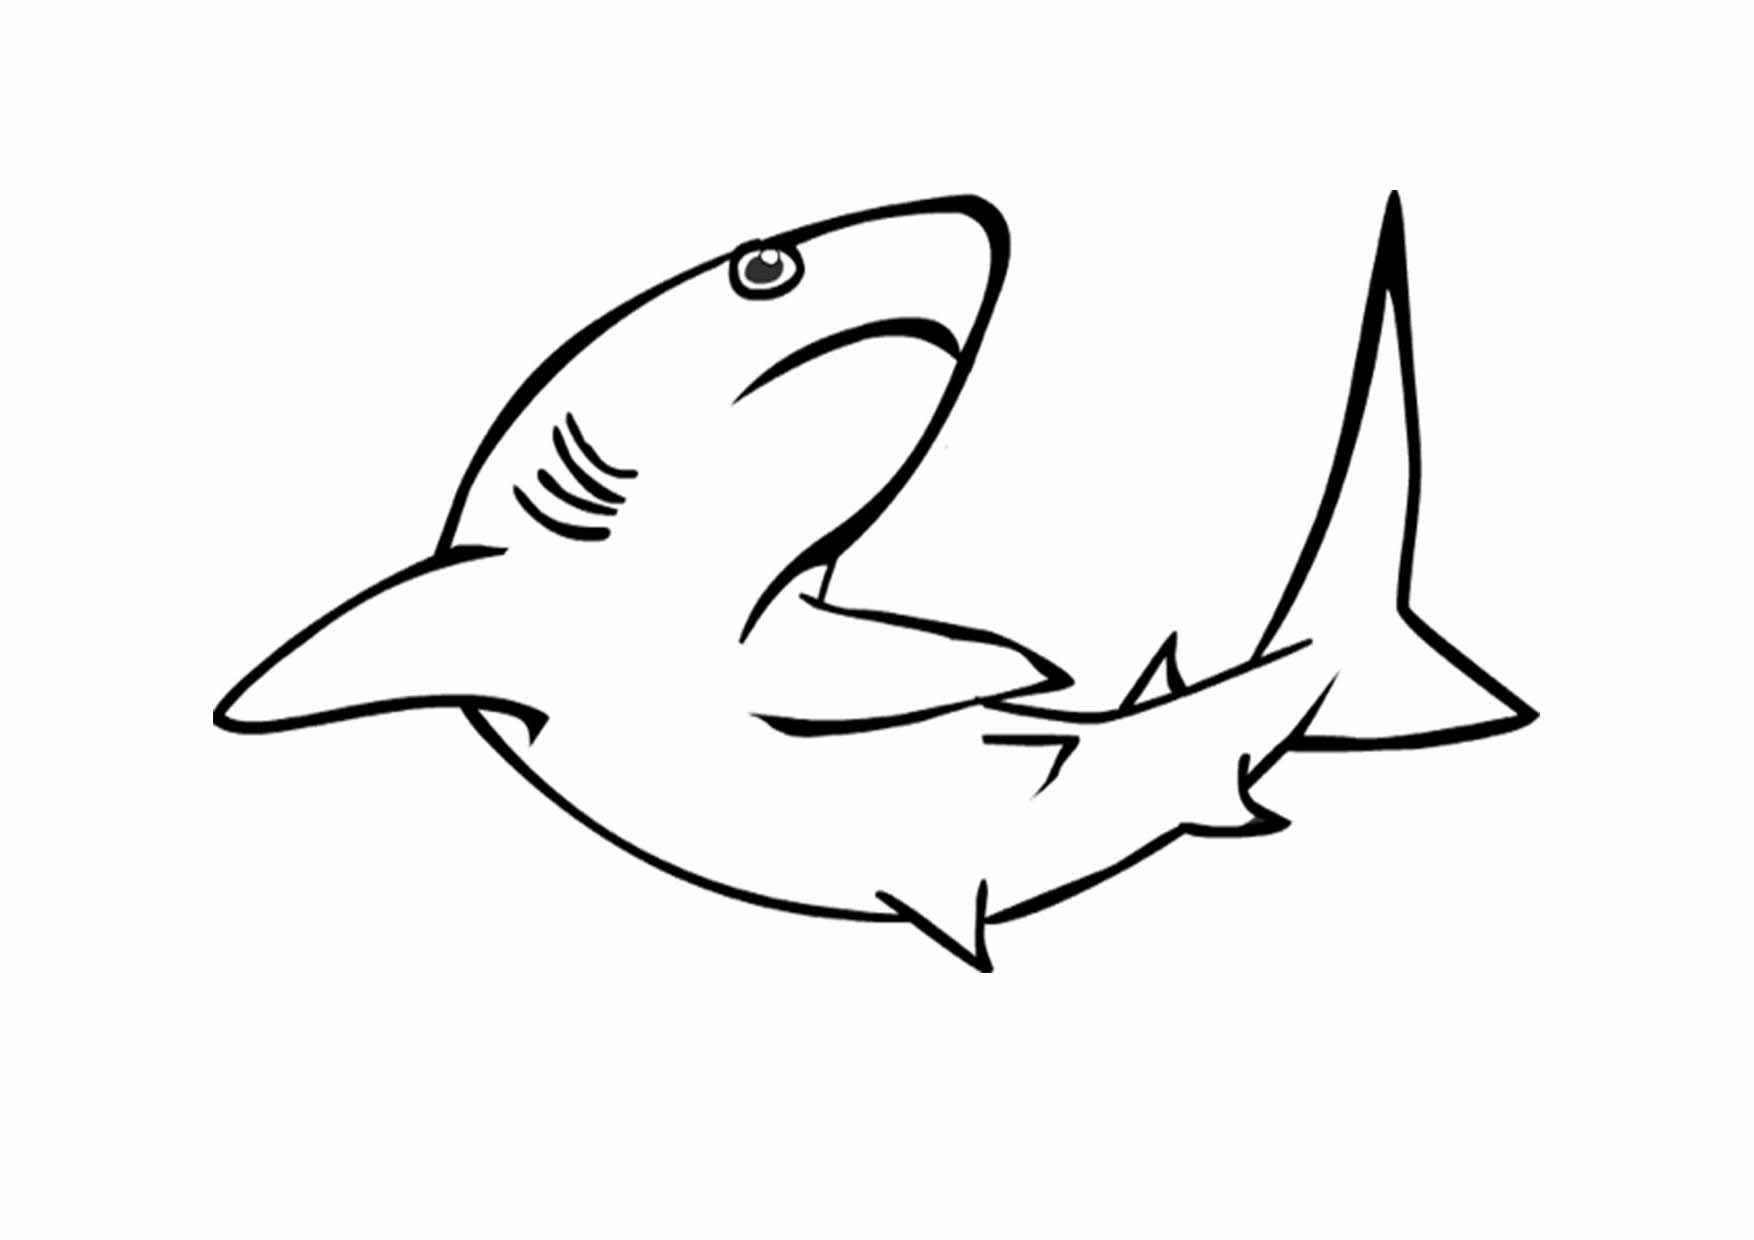 Vẽ cá mập không sơn